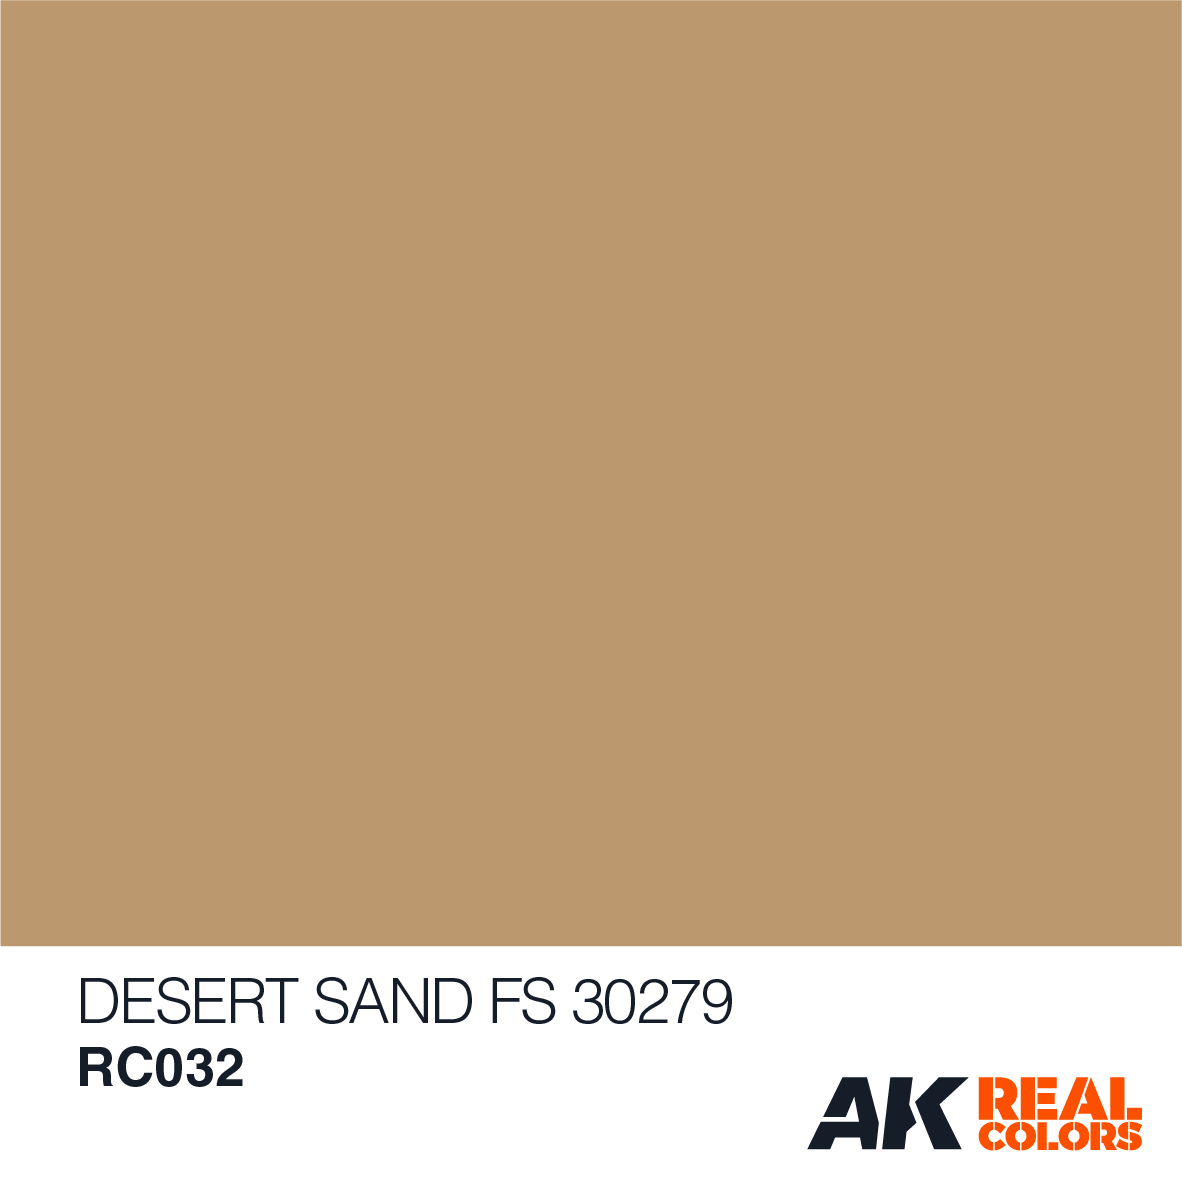 Desert Sand FS 30279